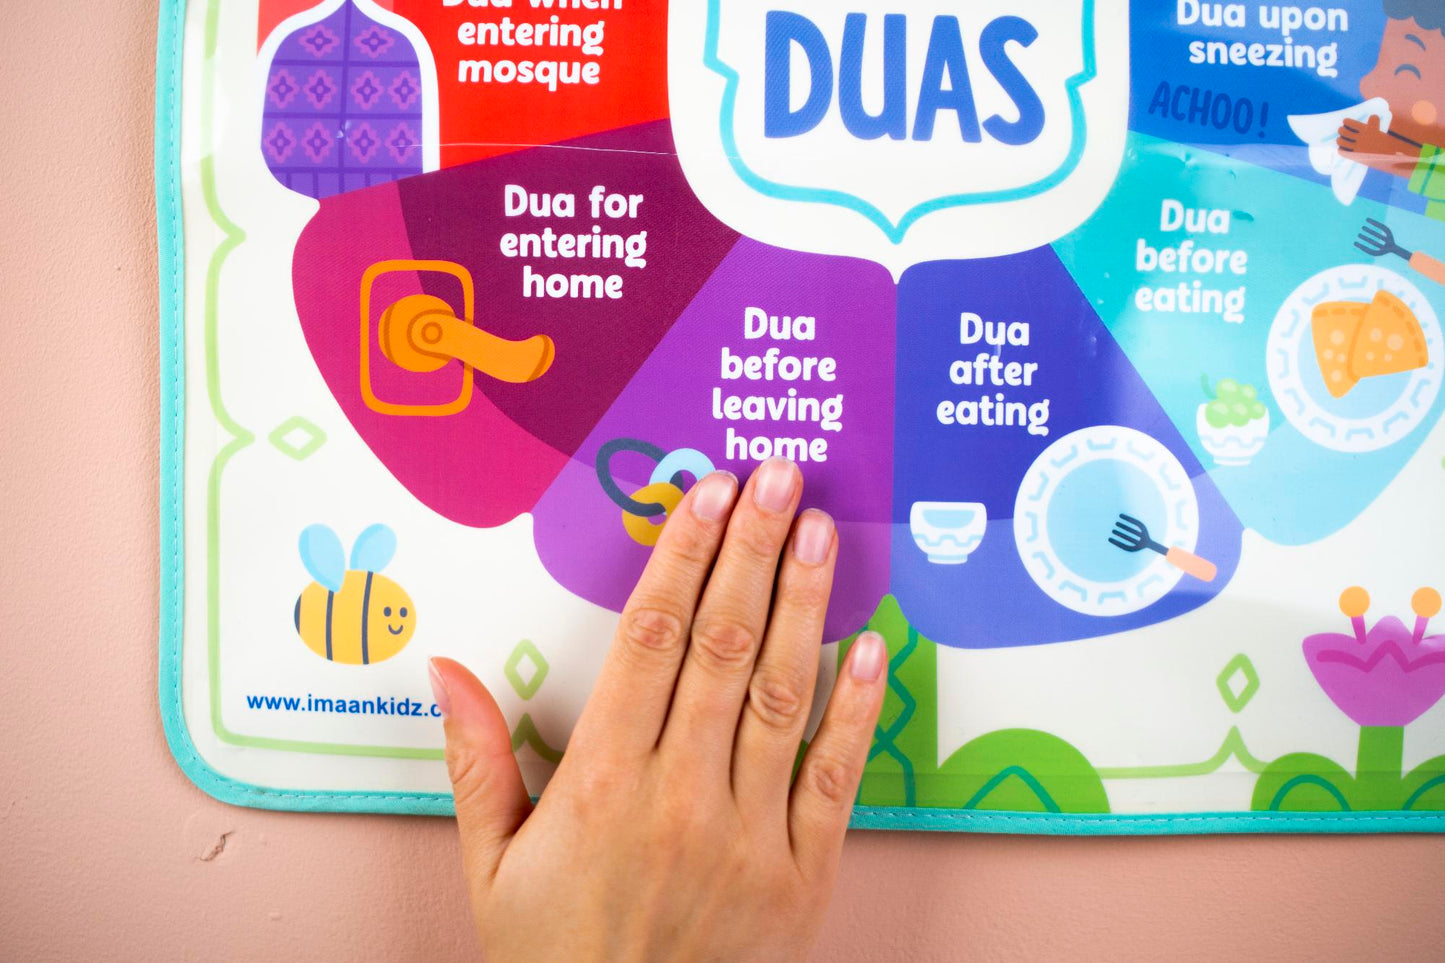 My Daily Duas - Poster Bercakap Interaktif